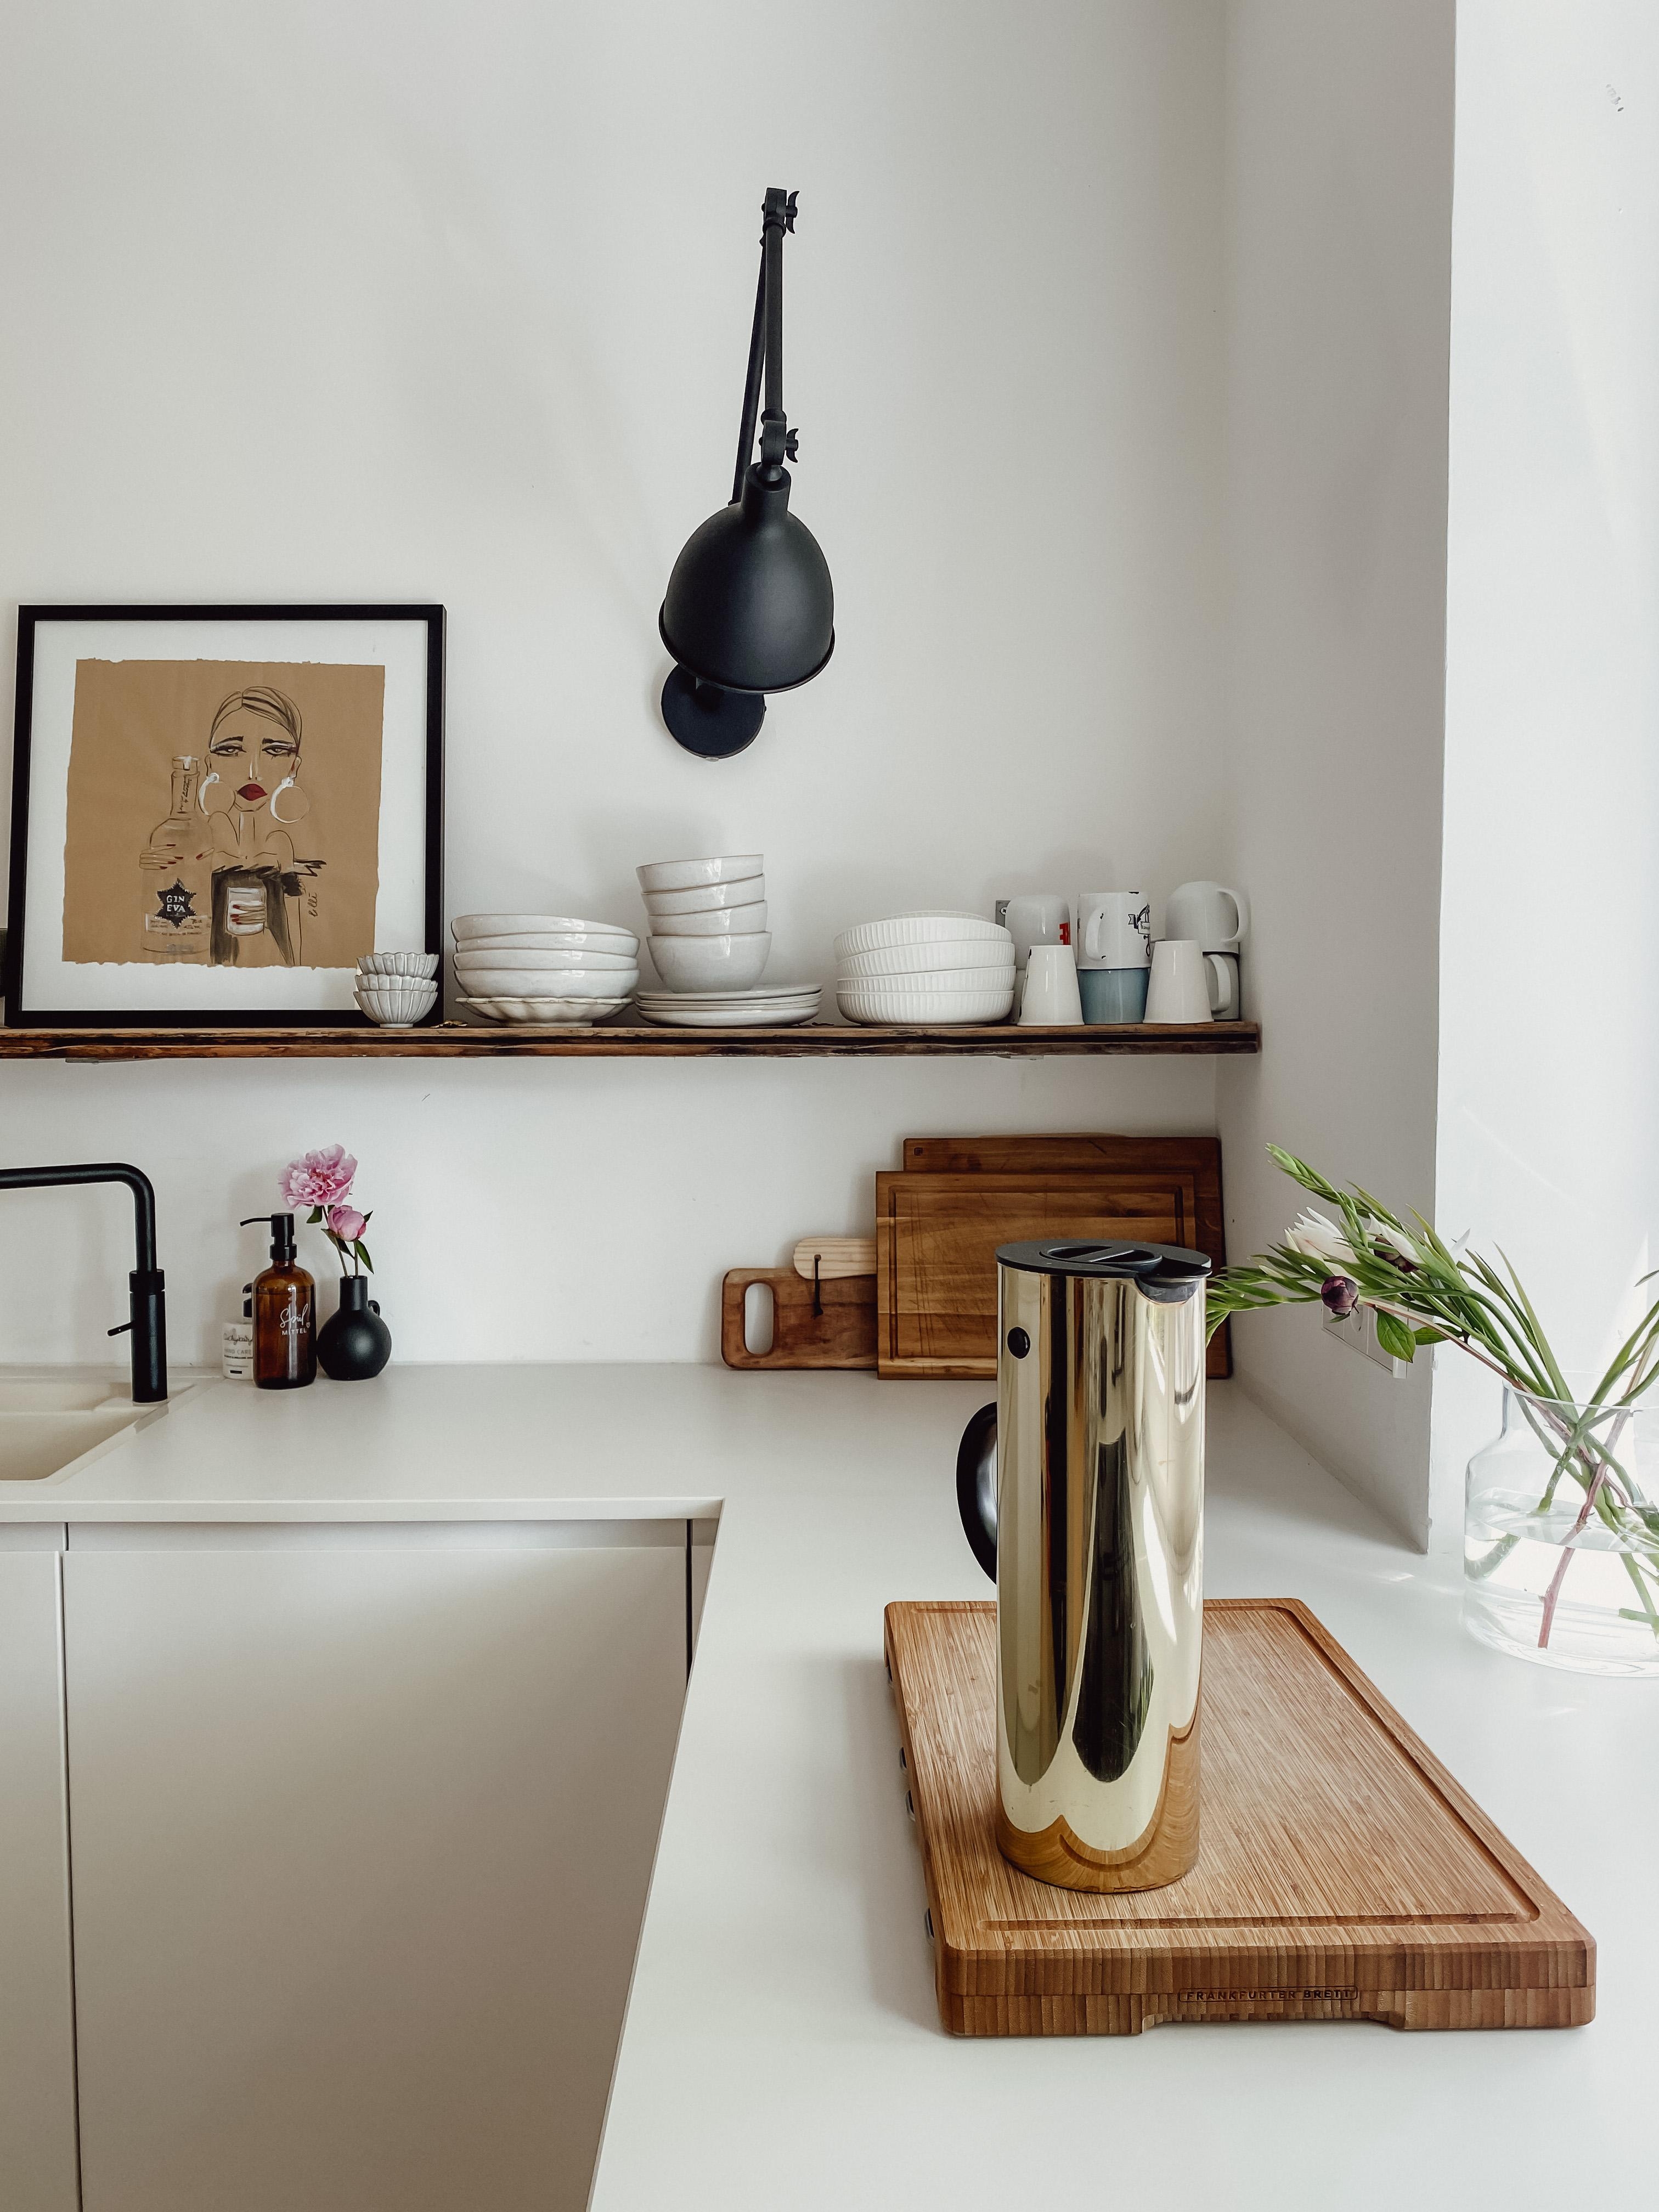 Bisschen Glamour in der Küche ✨

#stelton #gold #kaffee #küche #interior #whitekitchen